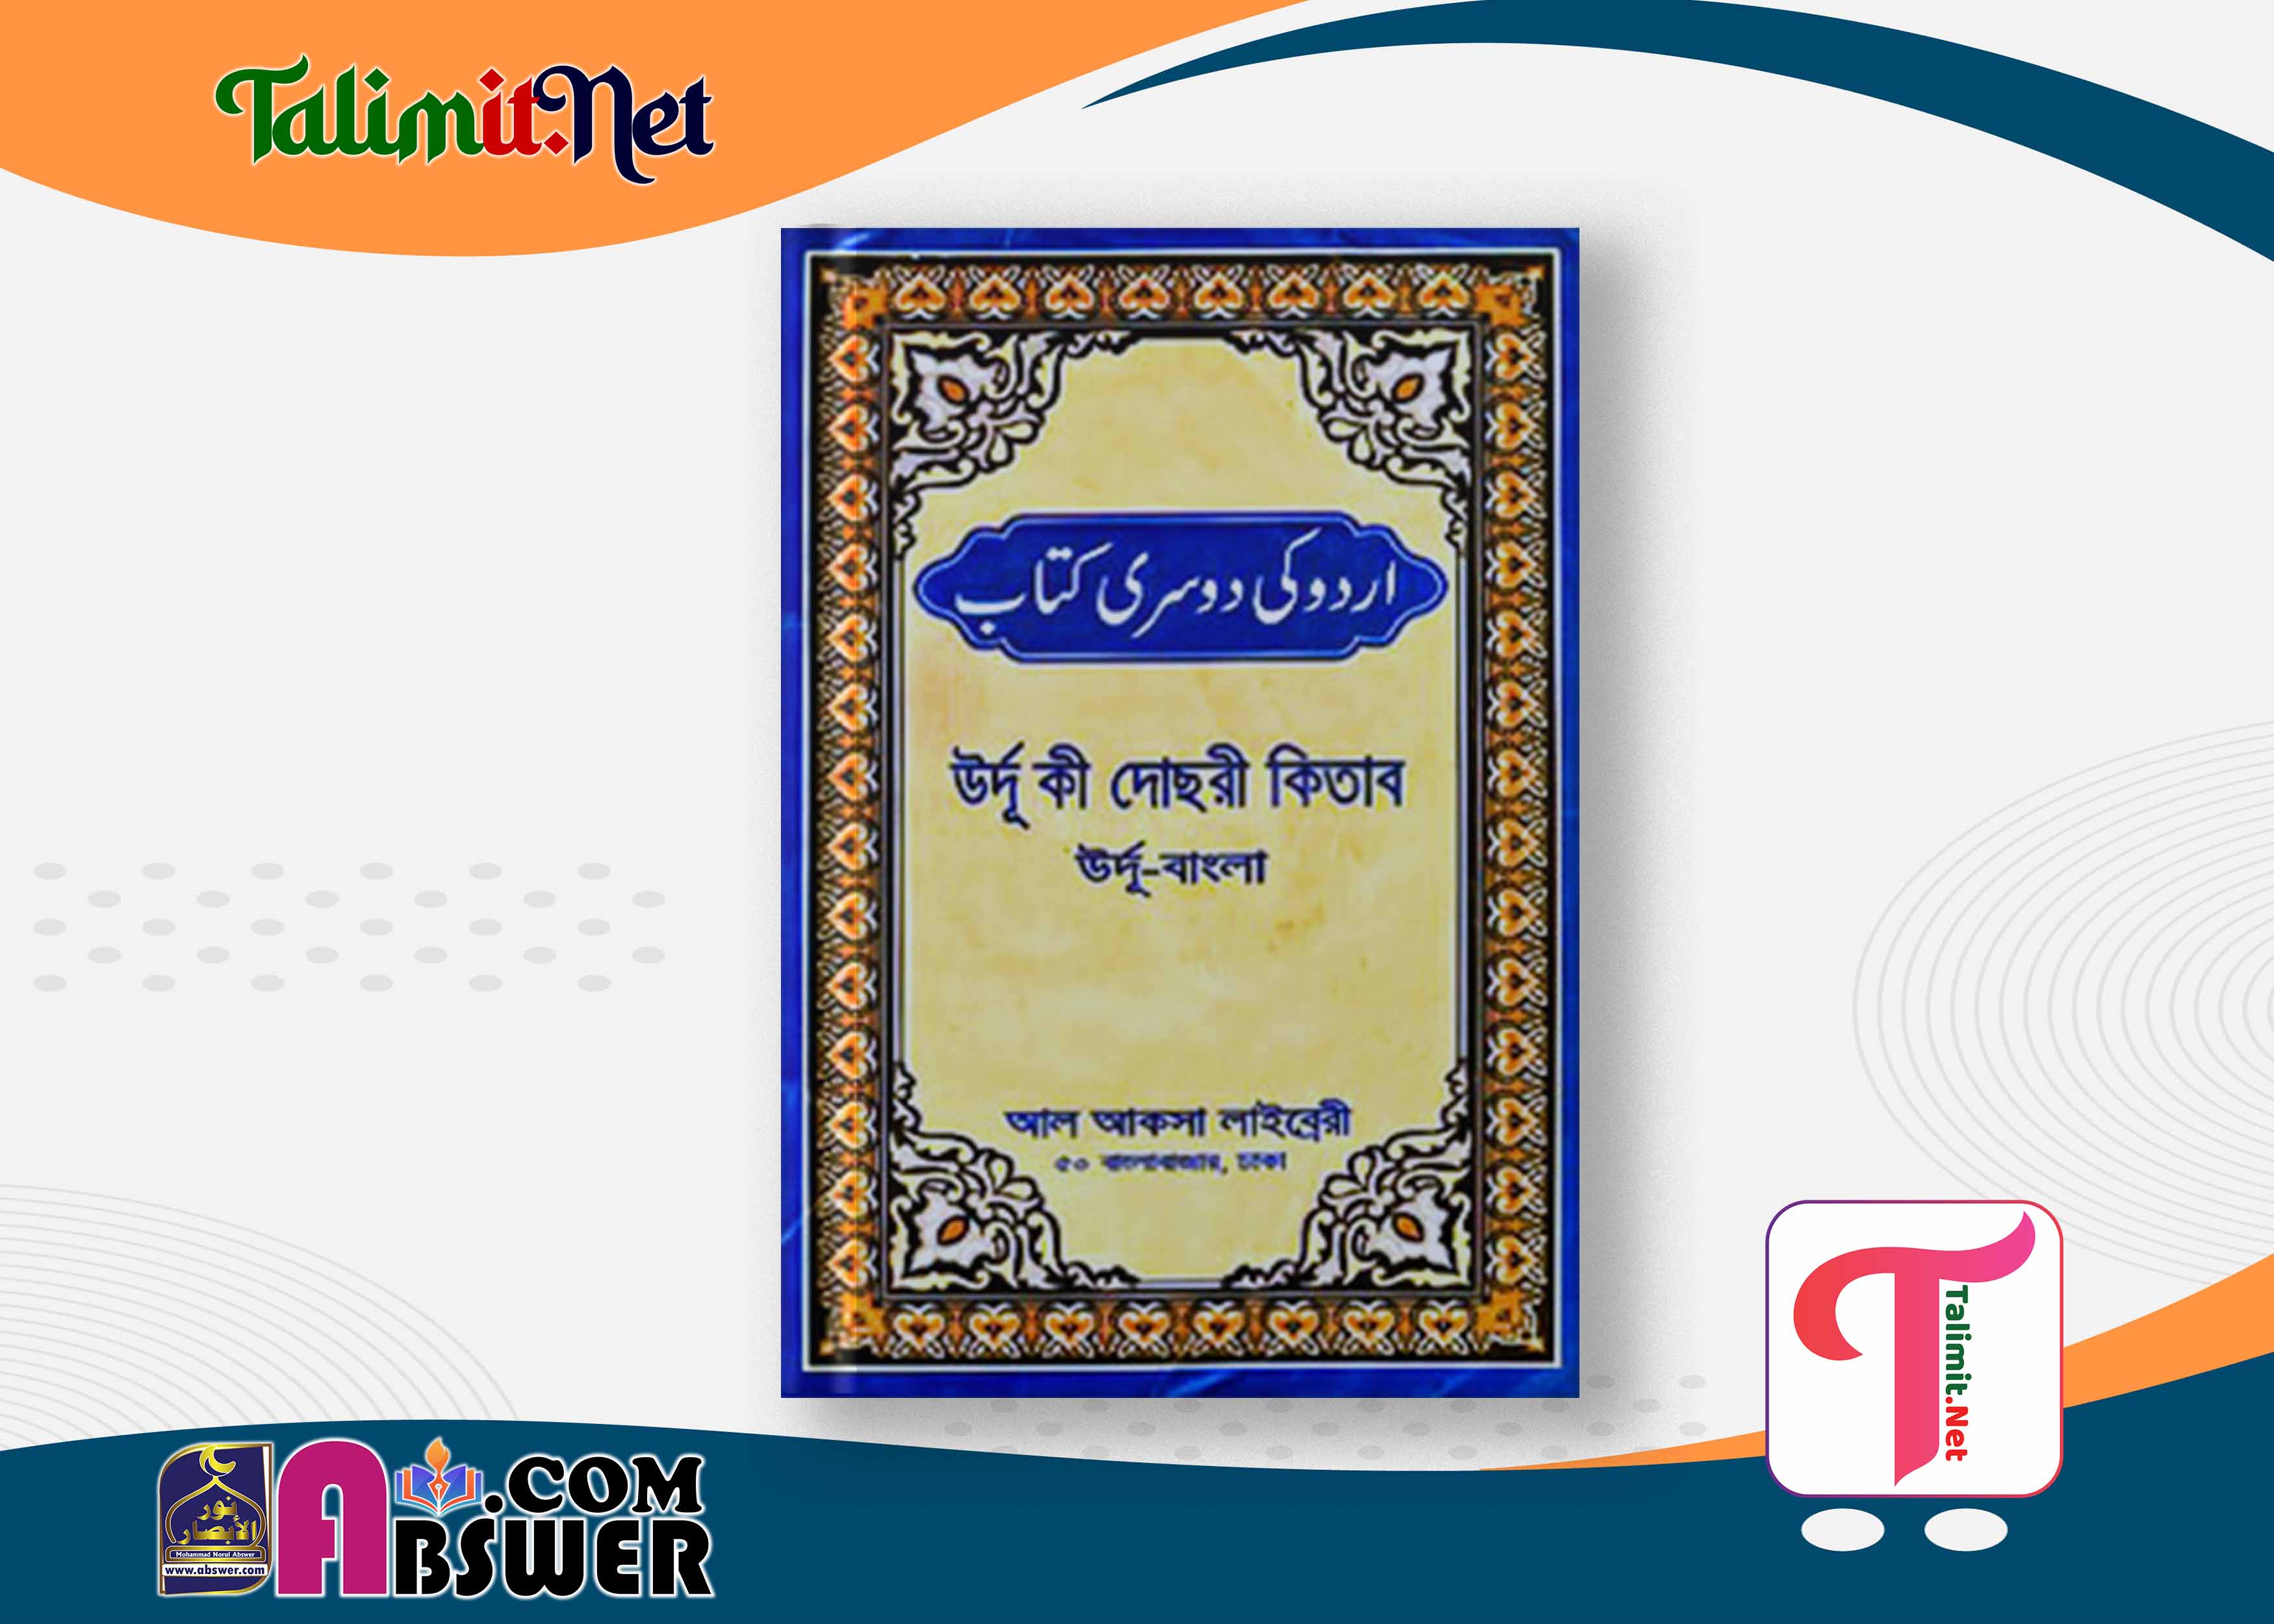 উর্দু কি দোসরী কিতাব দরসে নিজামী বই পিডিএফ - Urdu Ki Dusre Kitab Darse Nizami Book Pdf